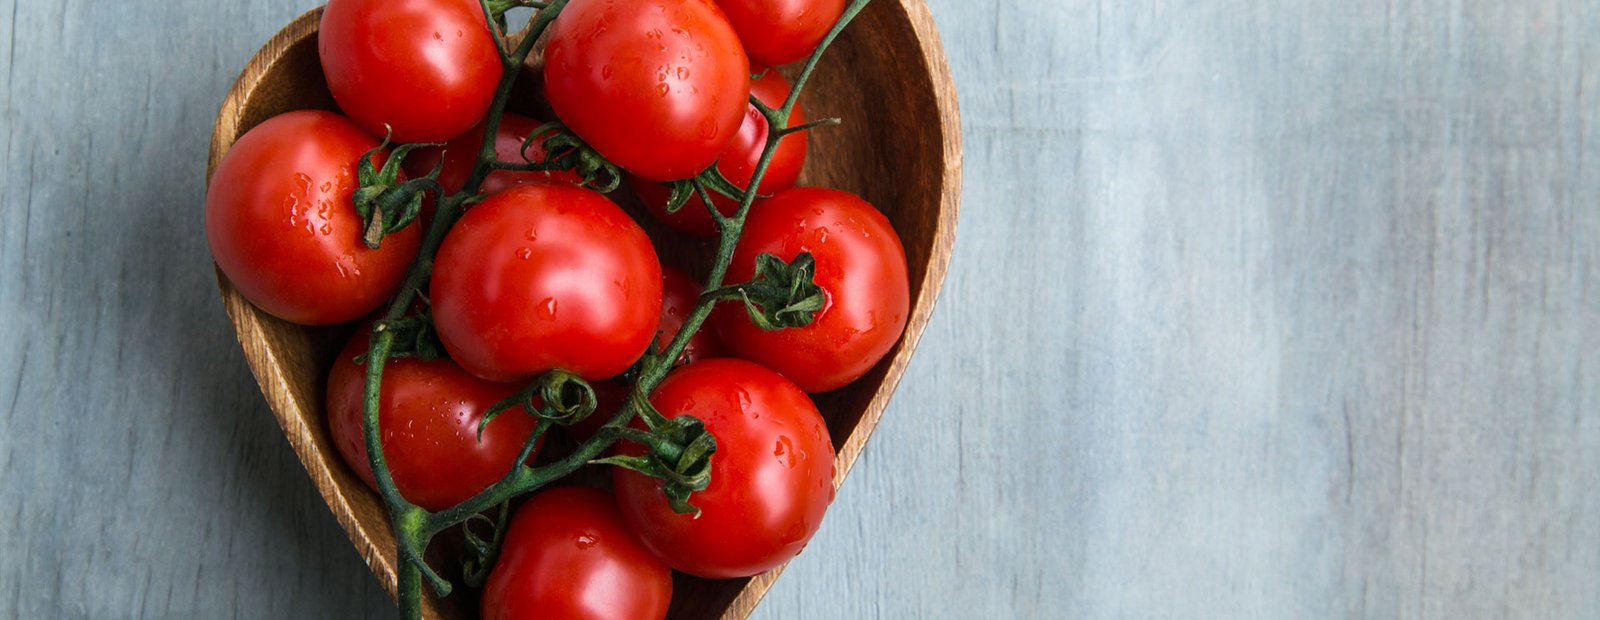 Crue, cuite ou en pilules, la tomate a du cœur